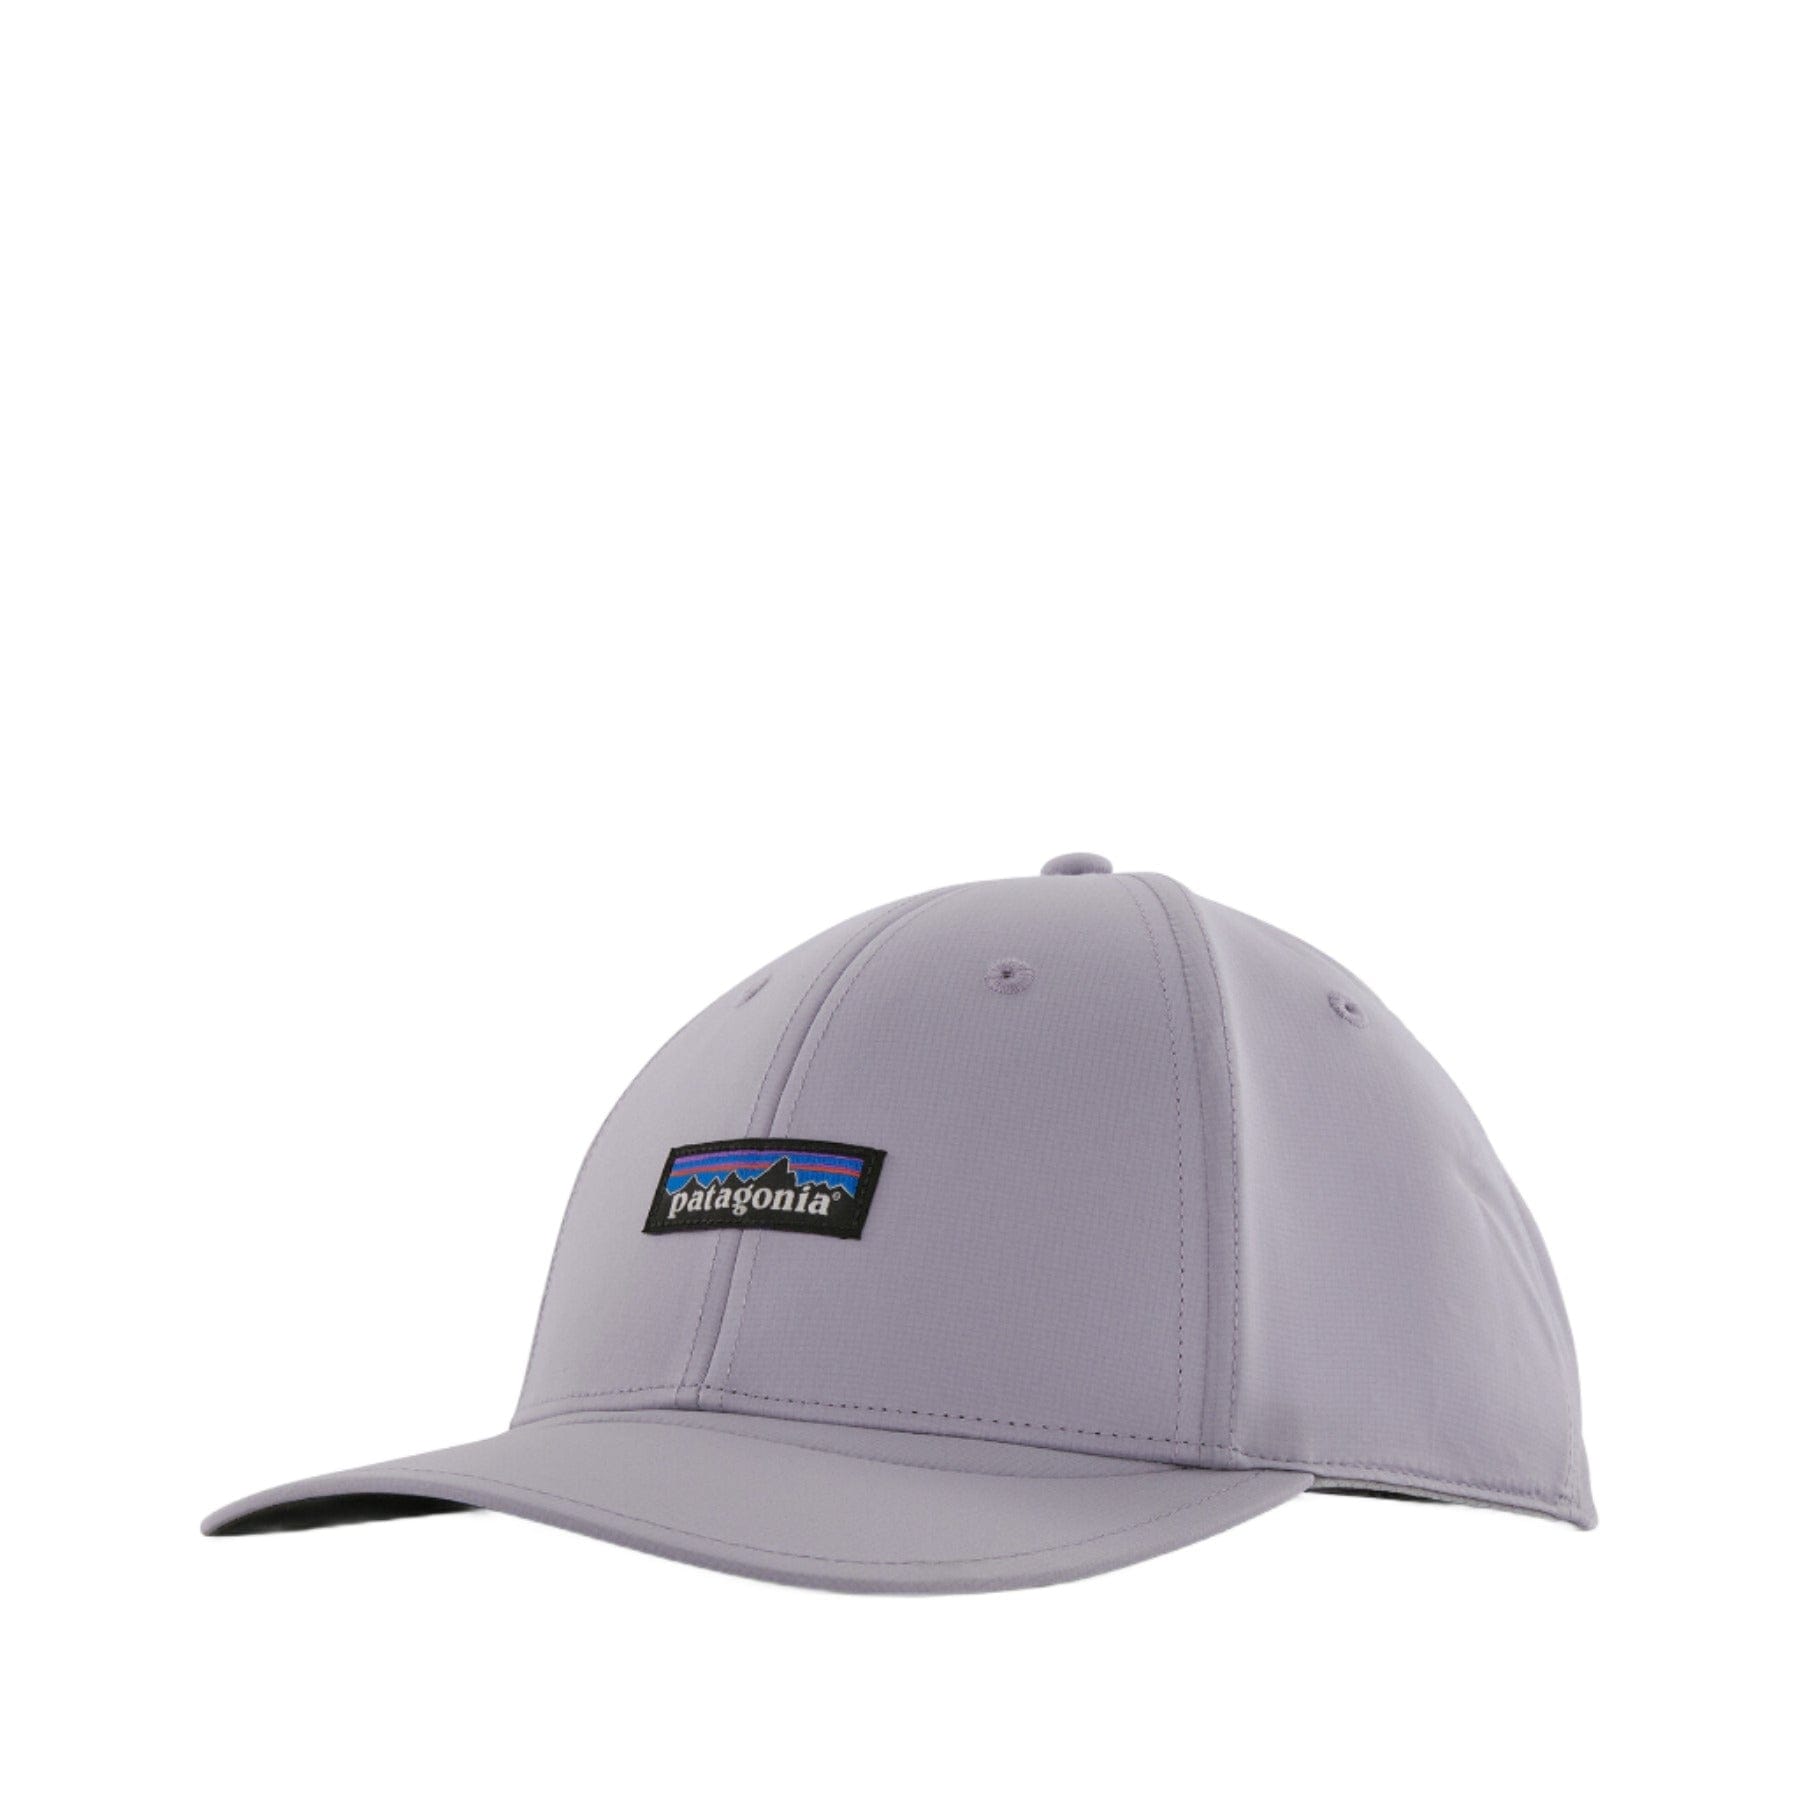 Airshed cap